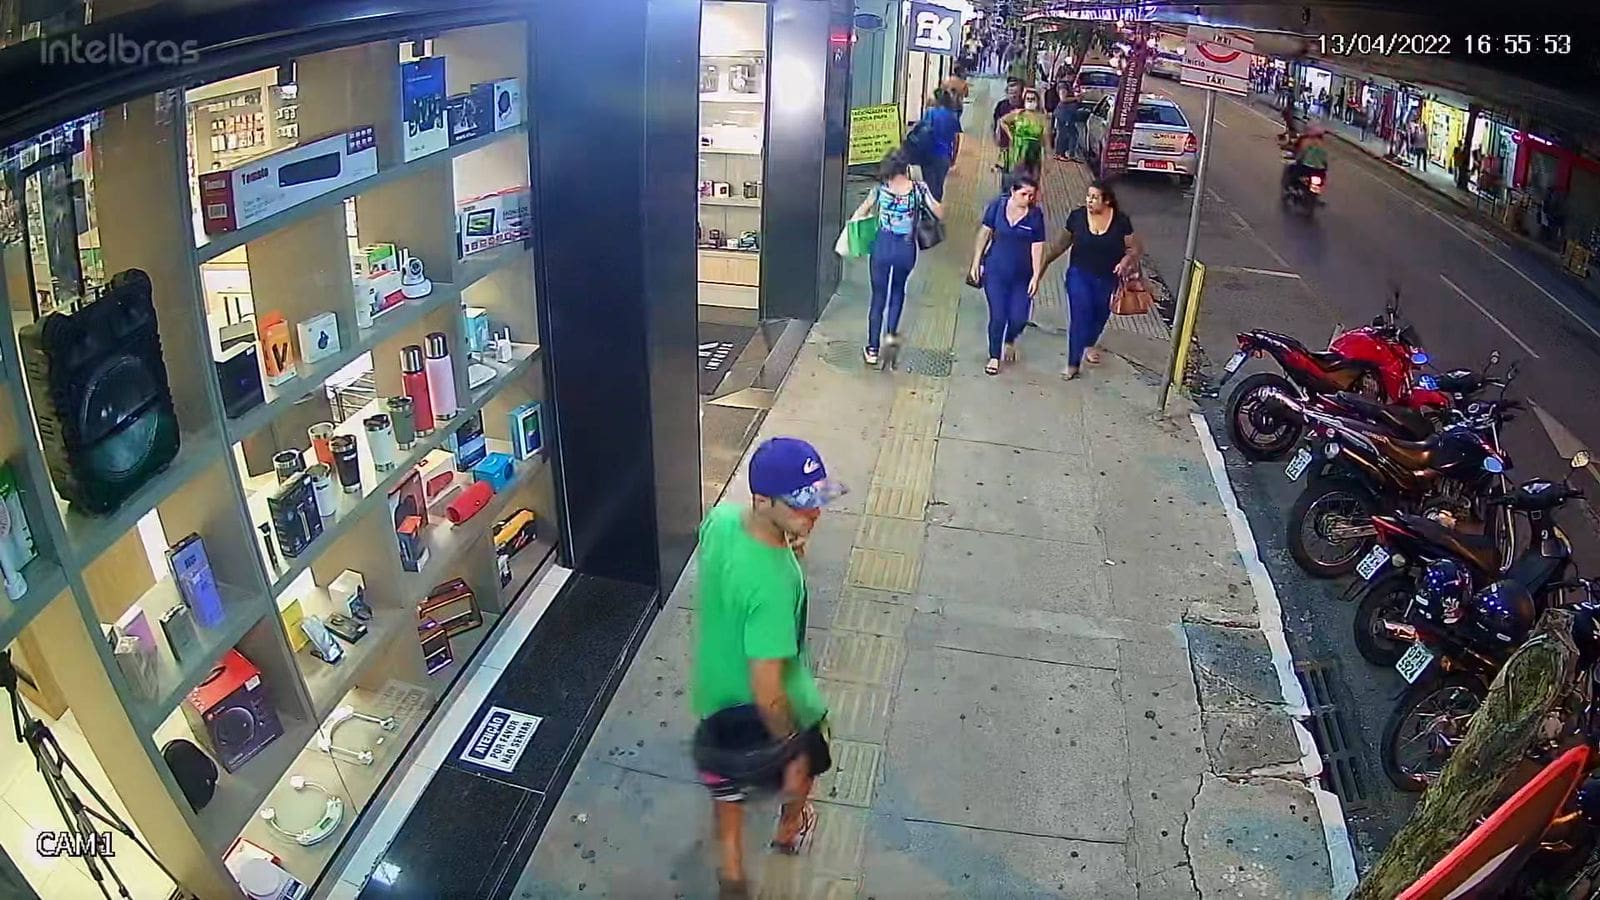 Suspeito de furto de Moto no Centro da Cidade segue sendo procurado pela polícia, veja o vídeo